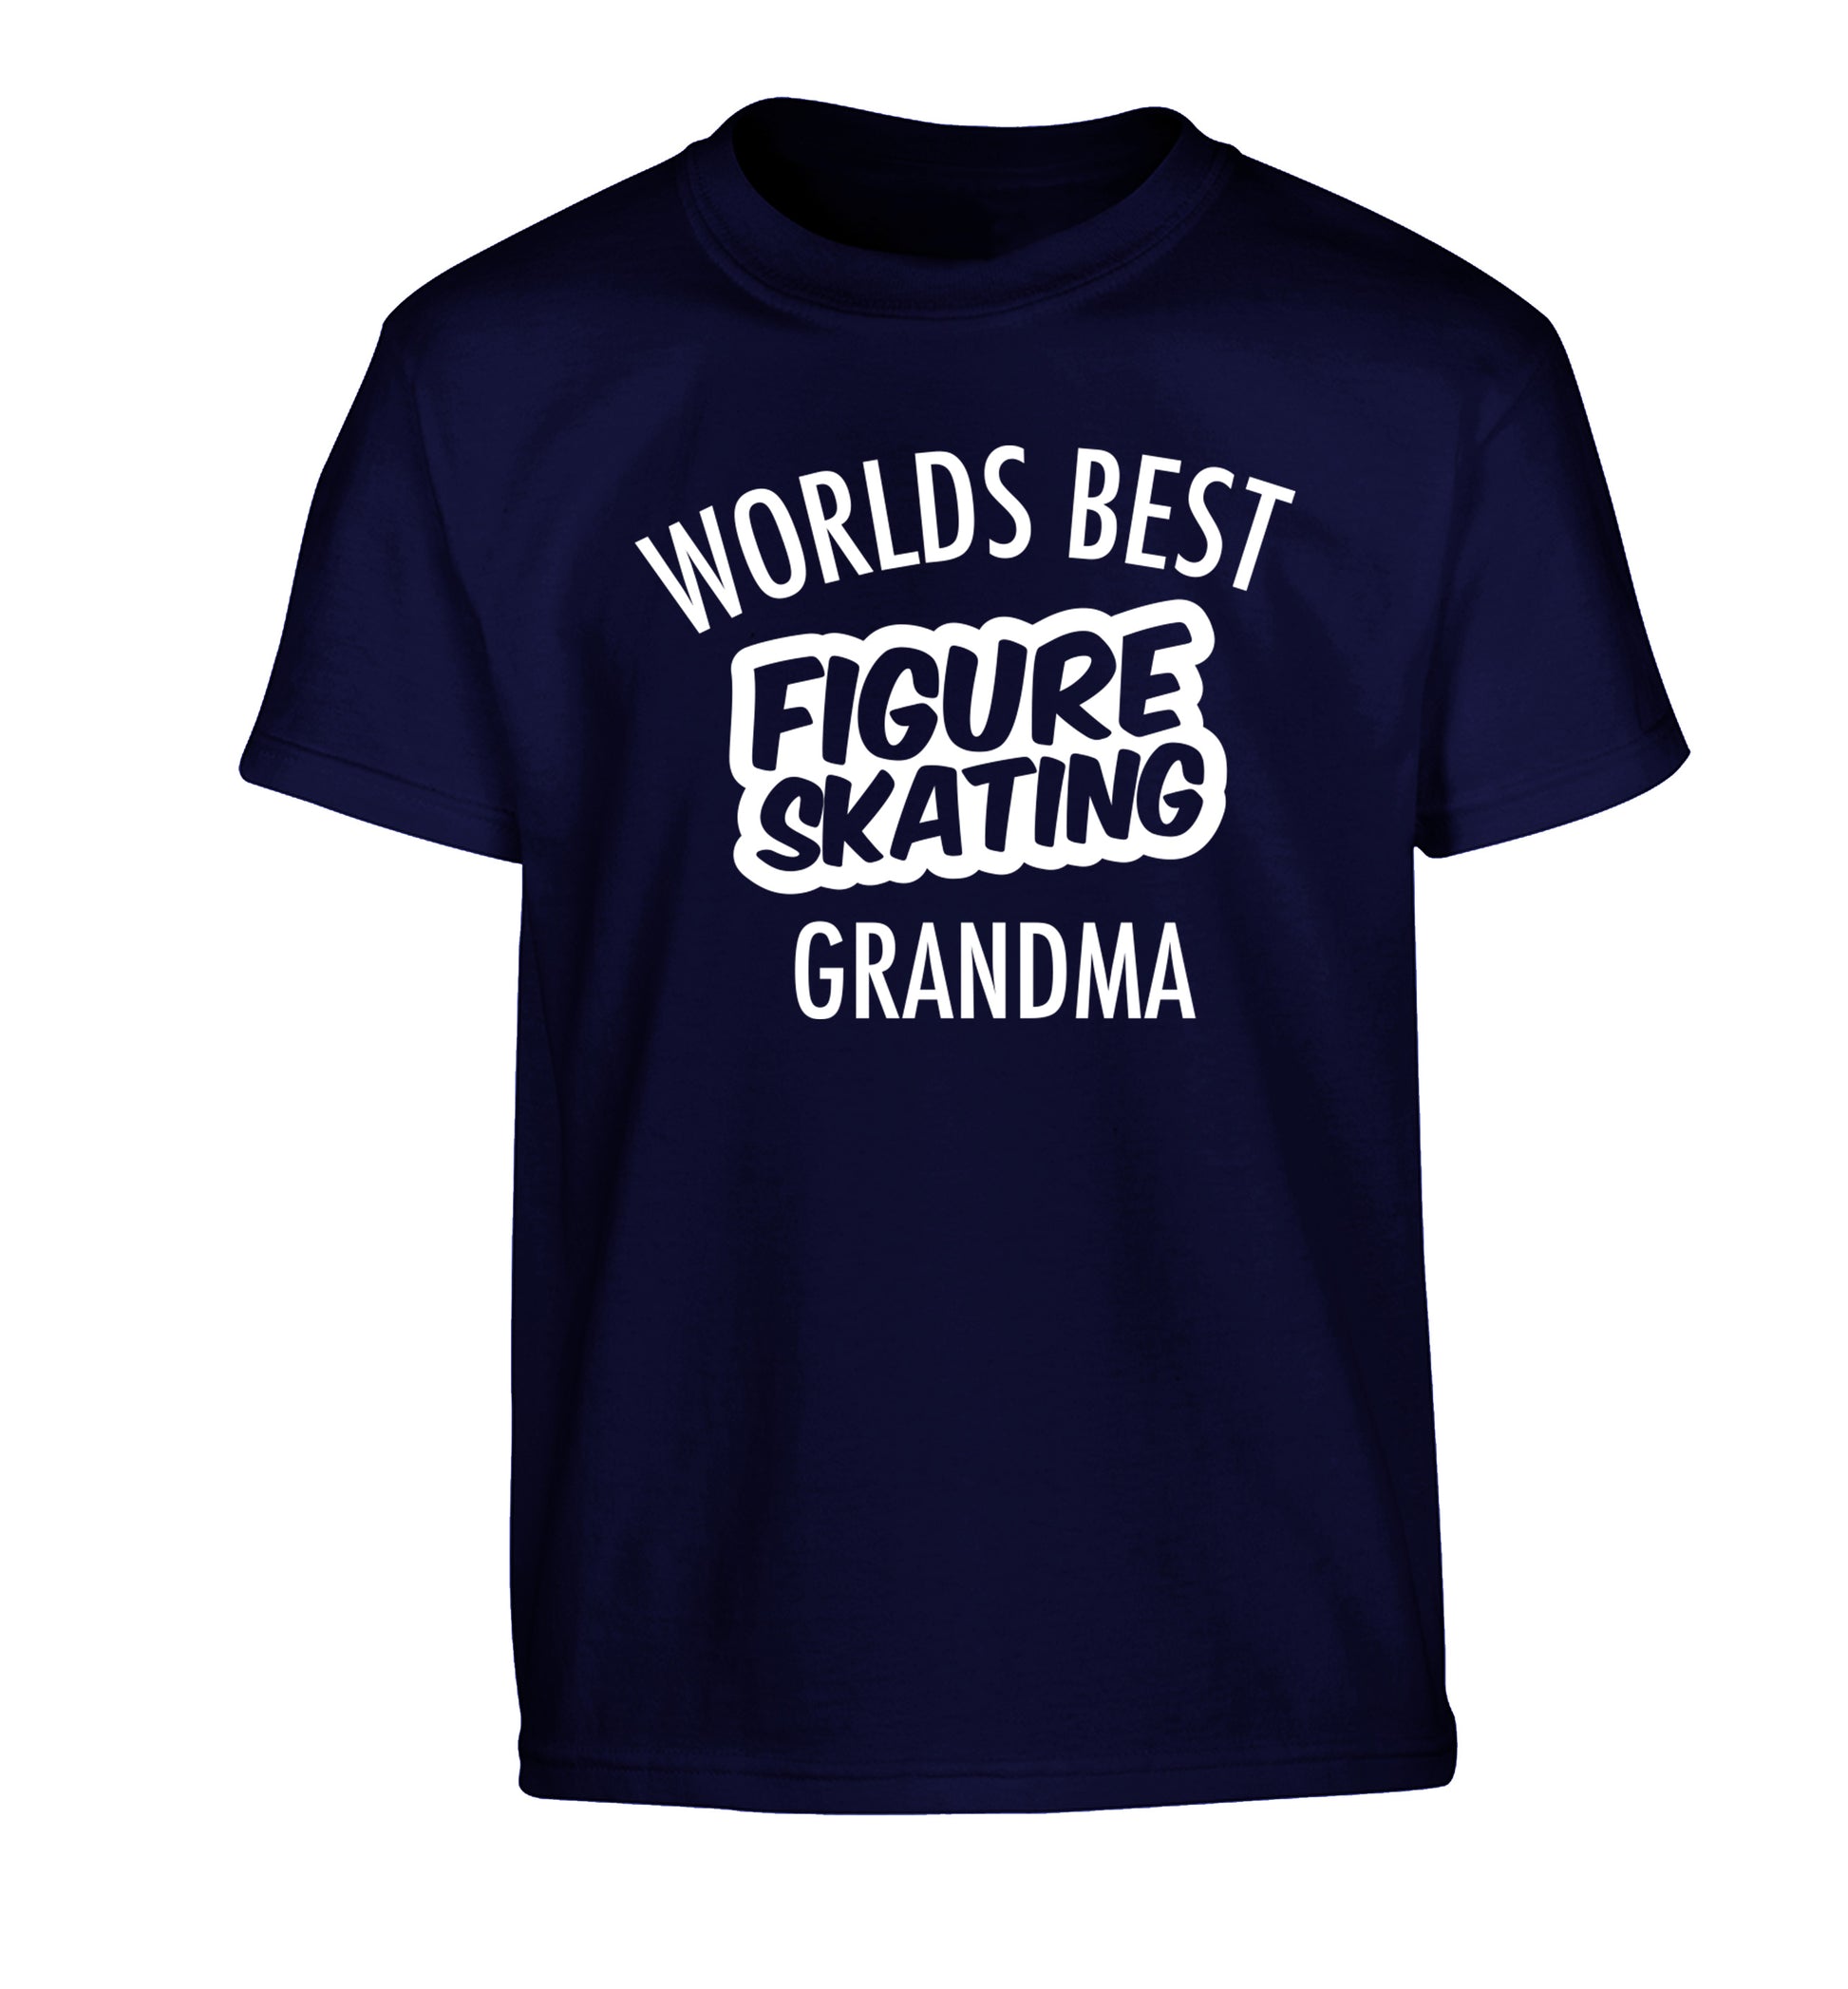 Worlds best figure skating grandma Children's navy Tshirt 12-14 Years